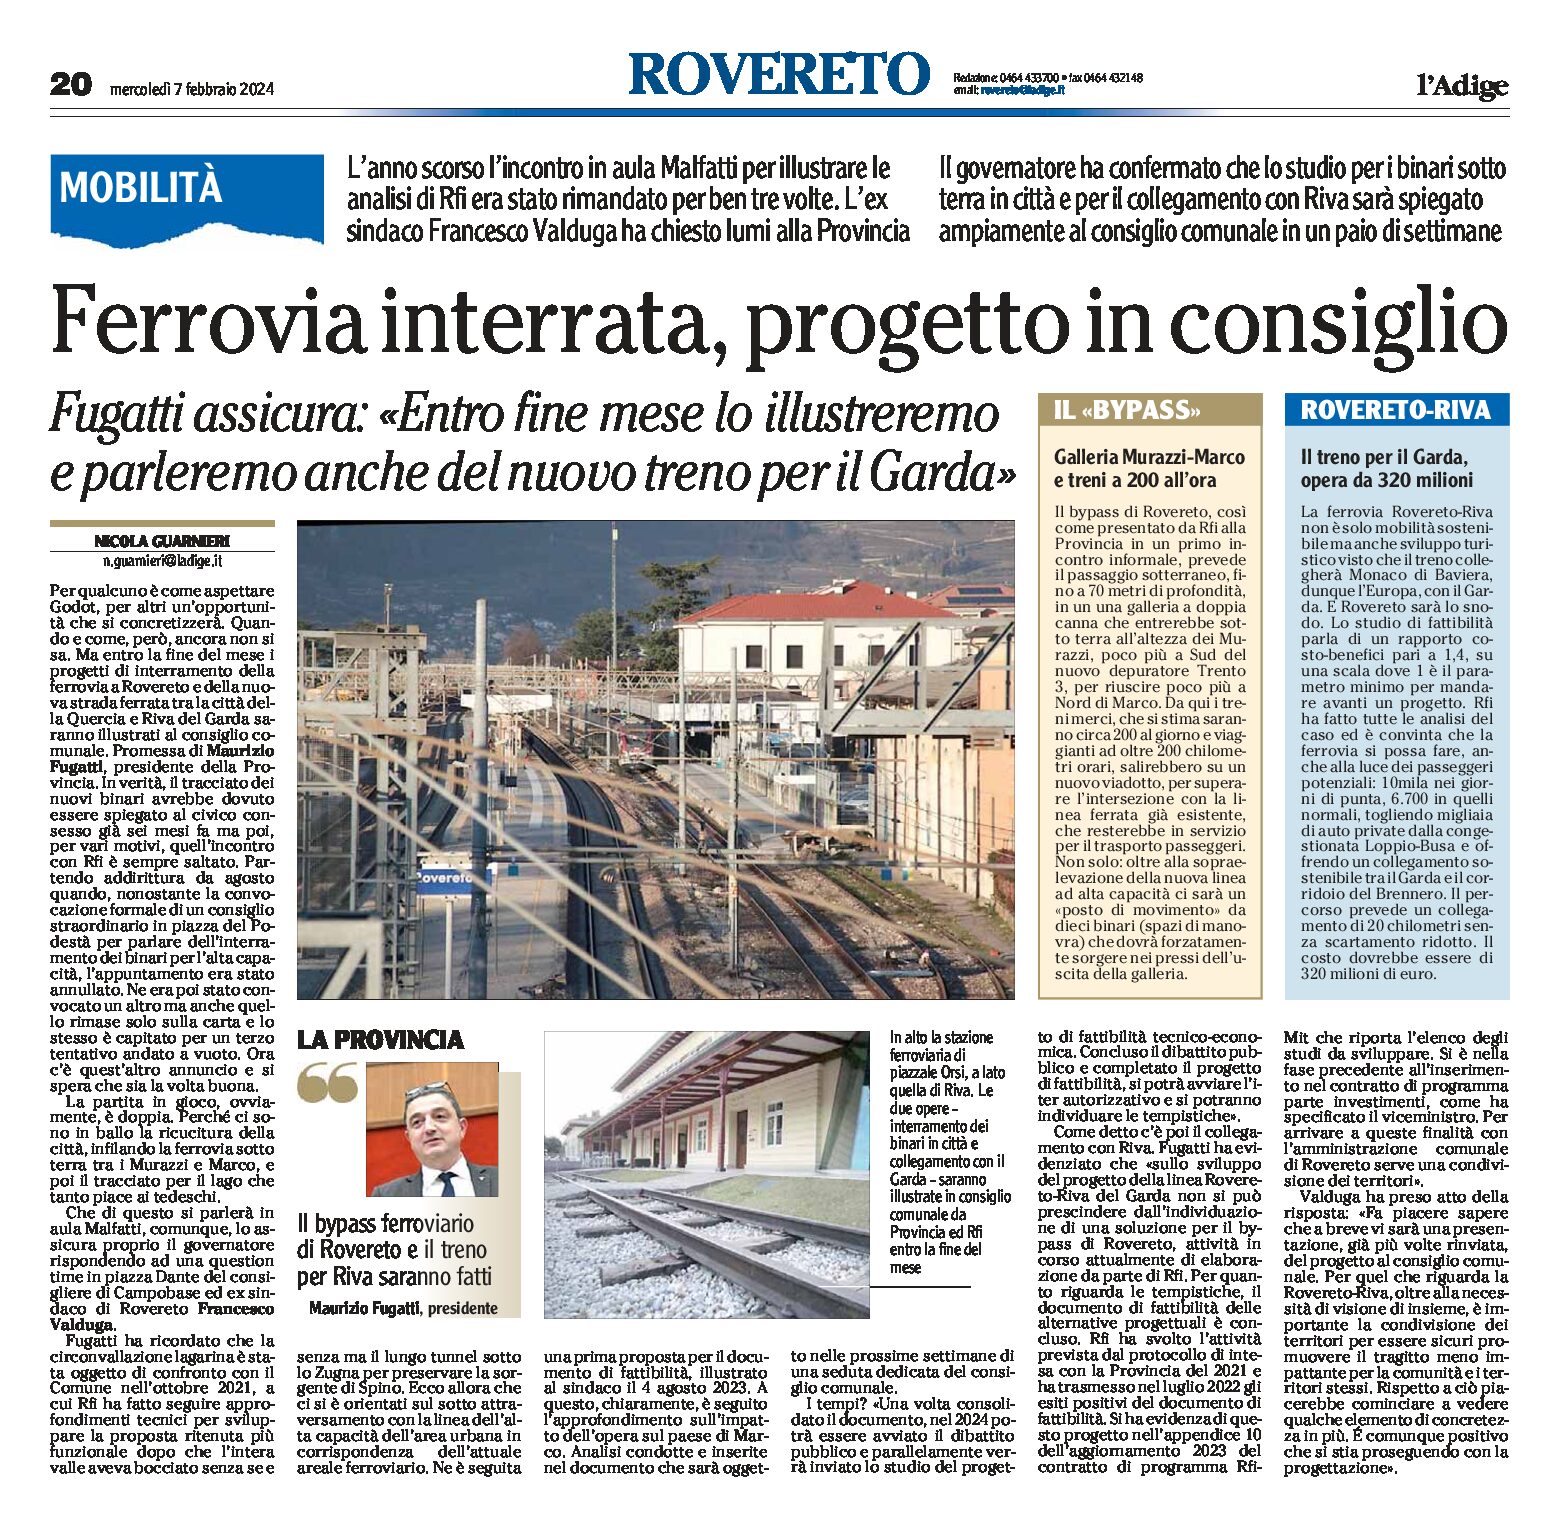 Rovereto: ferrovia interrata e nuovo treno del Garda, progetti illustrati al consiglio a fine mese